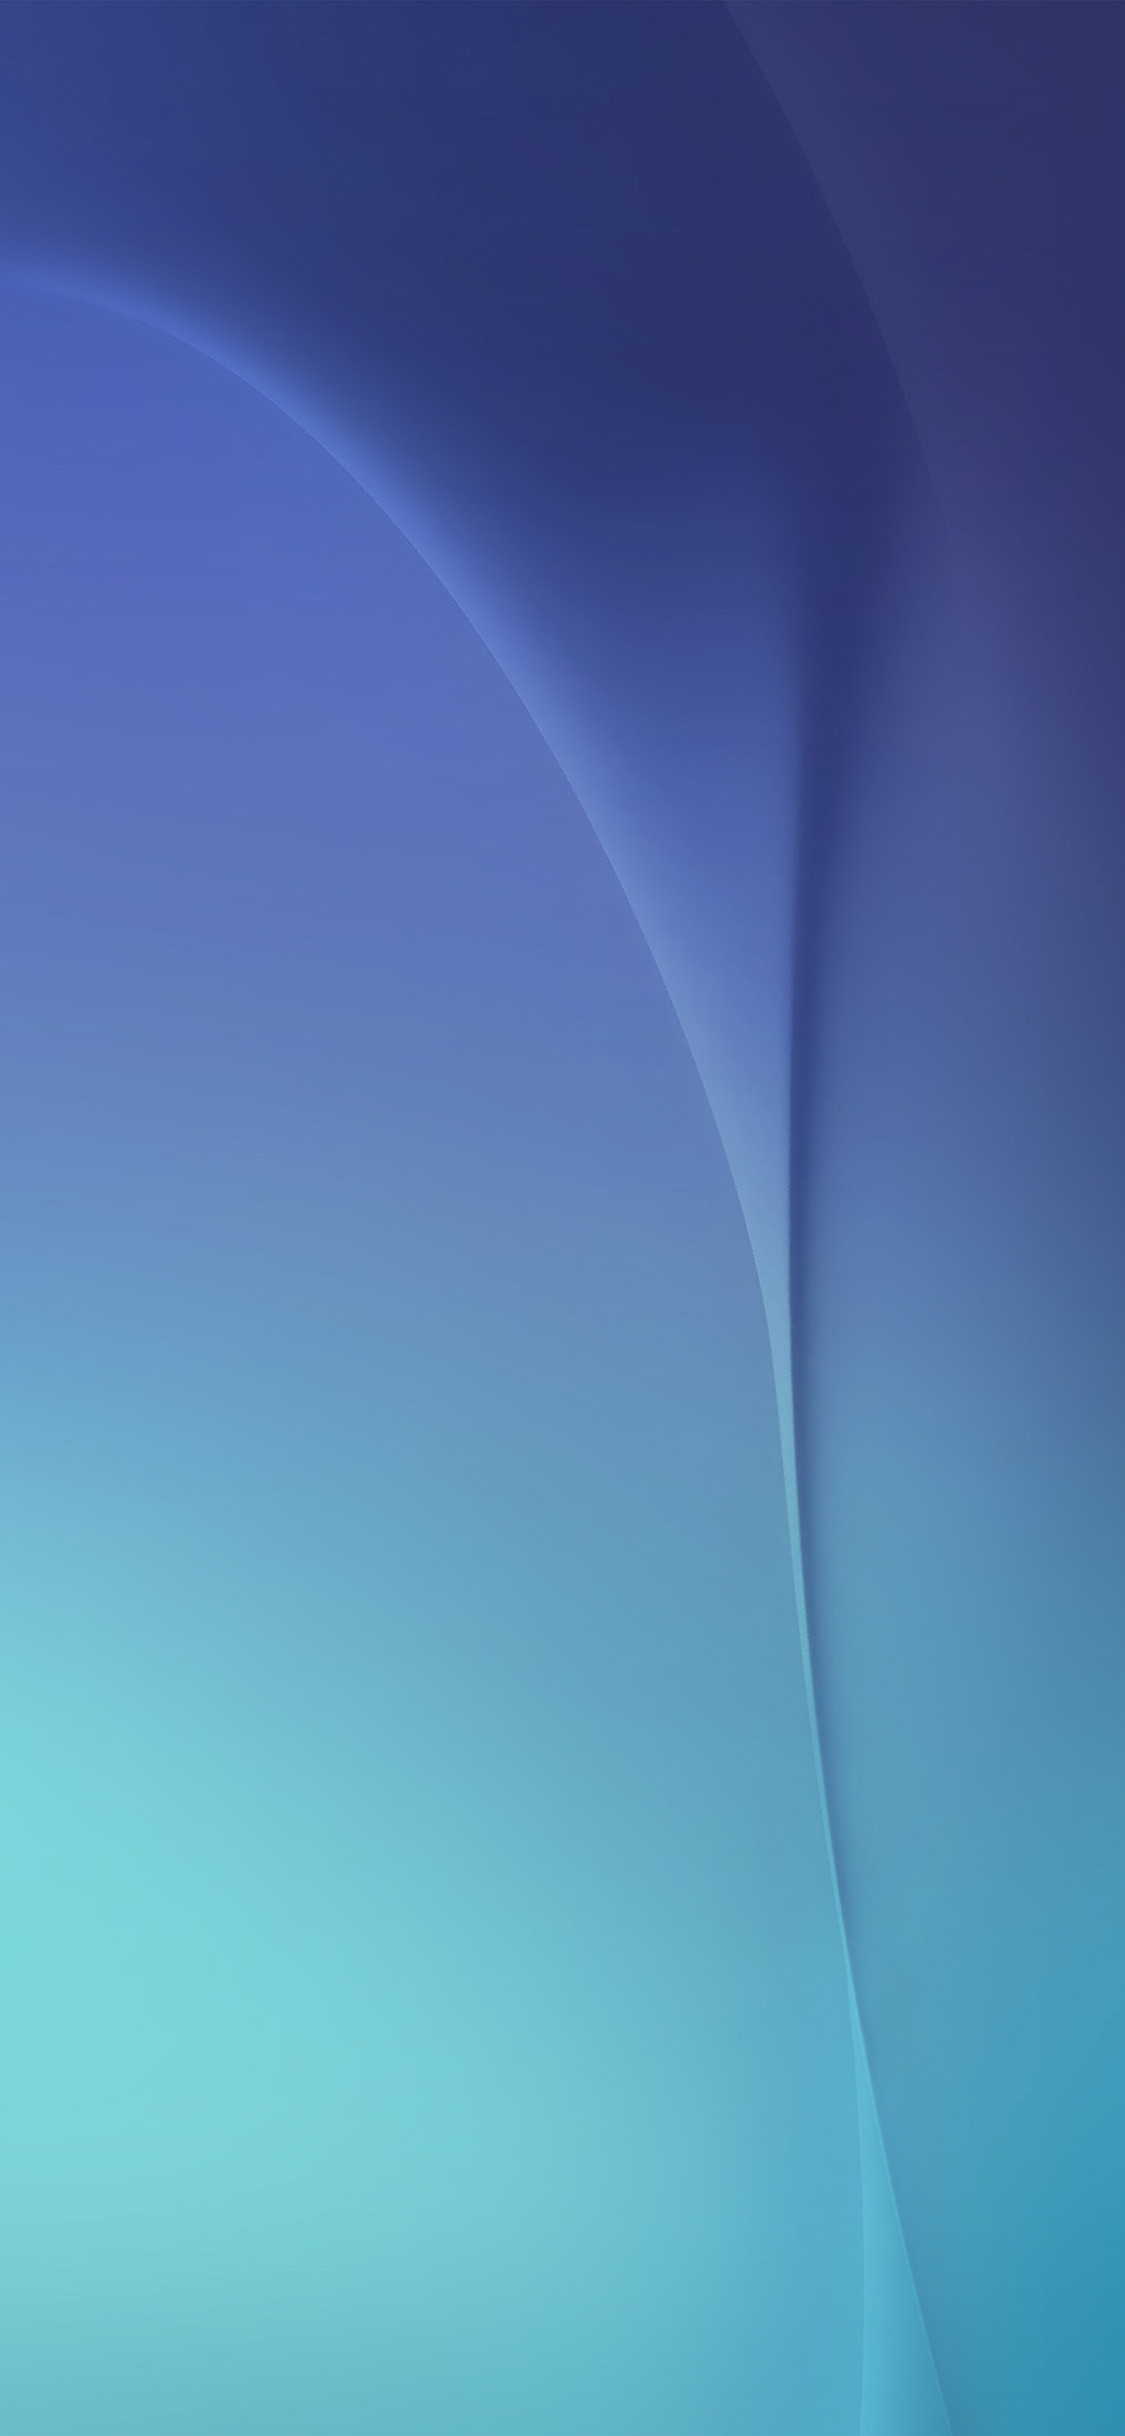 1125x2436 Deep blue abstract digital blue pattern iPhone 8 Wallpaper